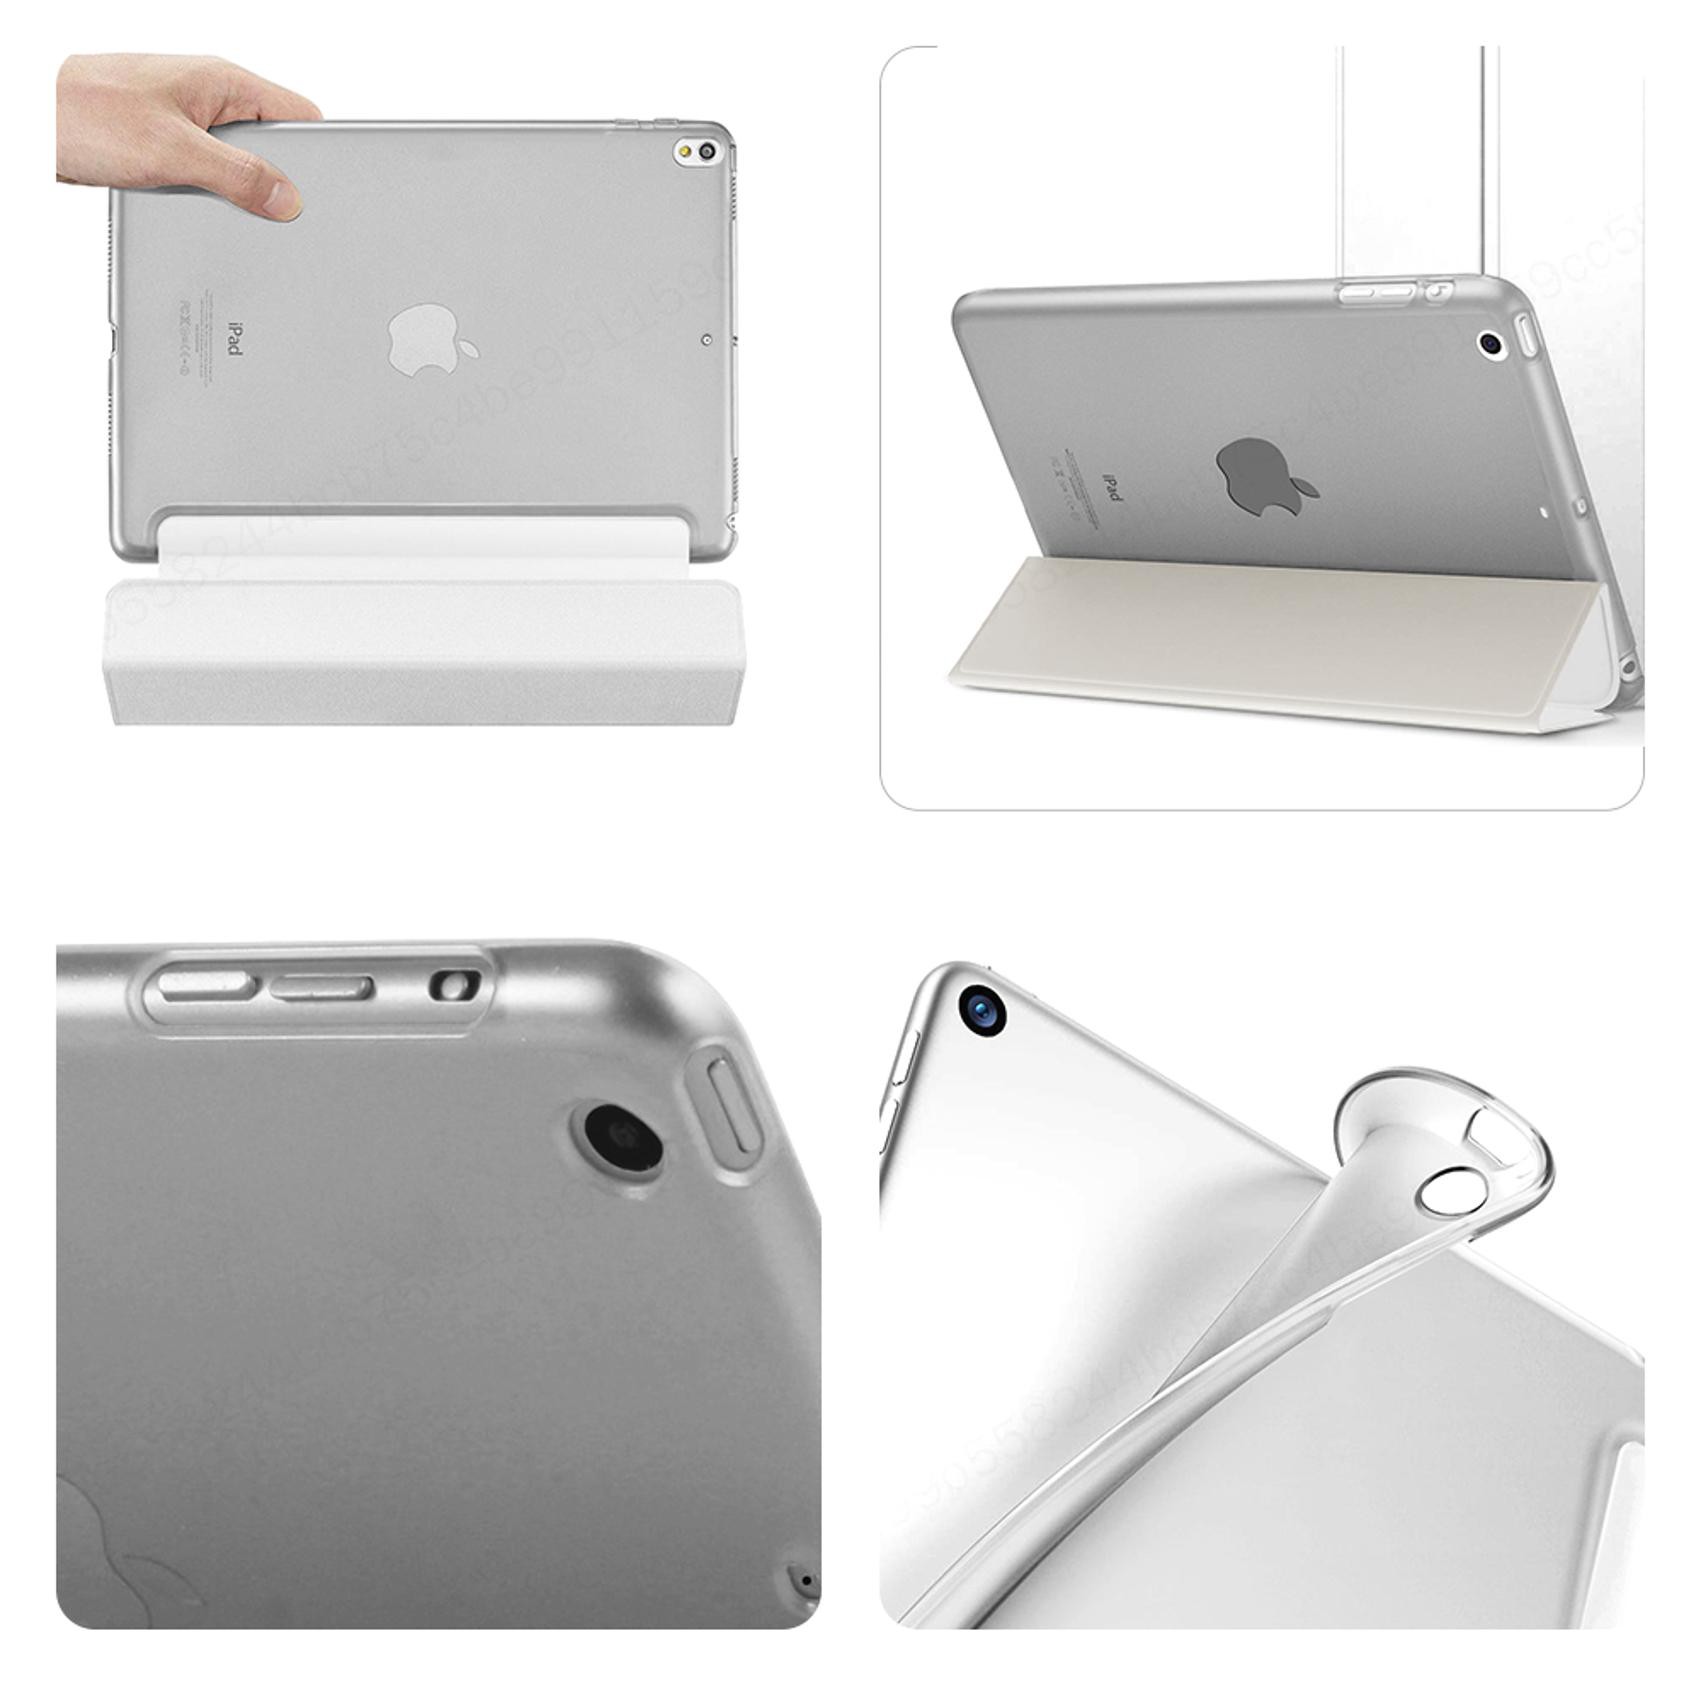 Ốp PU + PC máy tính bảng cao cấp mỏng nhẹ cho iPad mini1 3 5 2019 2 4